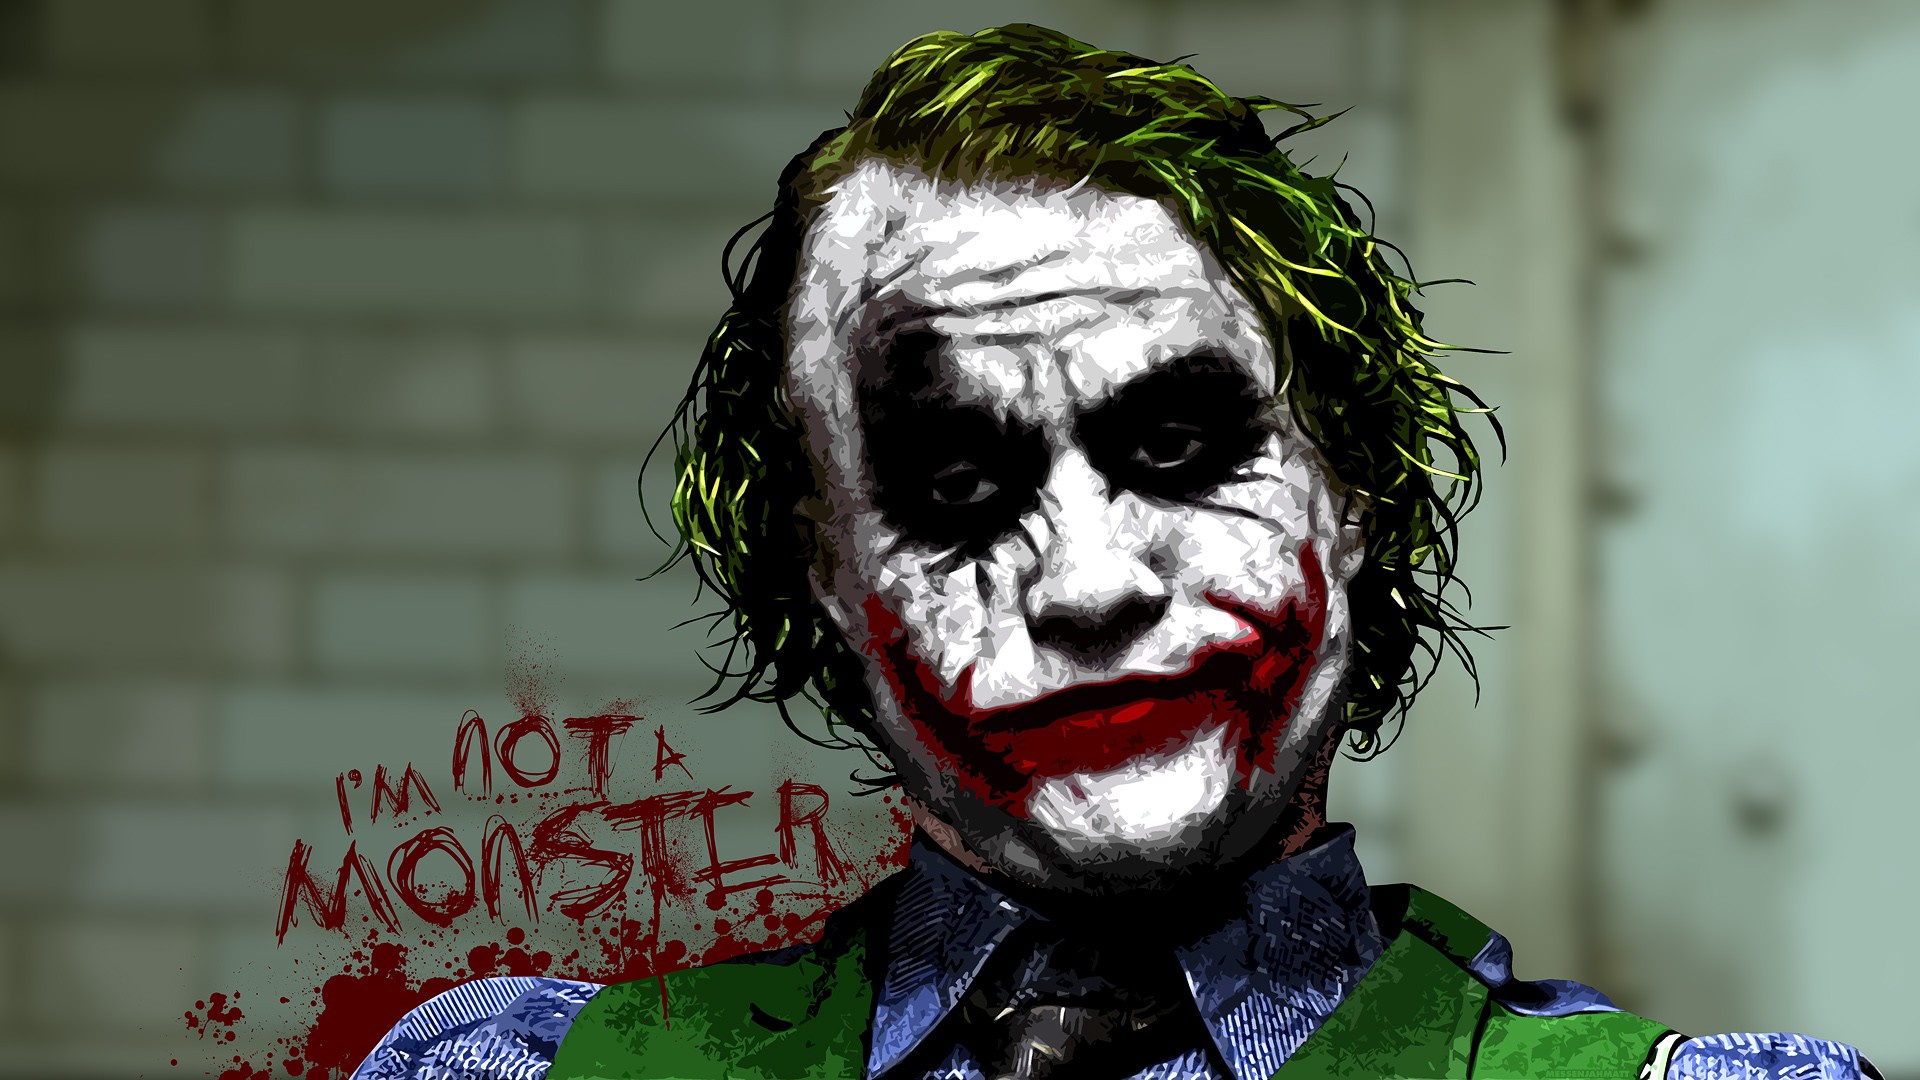 Joker I M Not A Monster - HD Wallpaper 